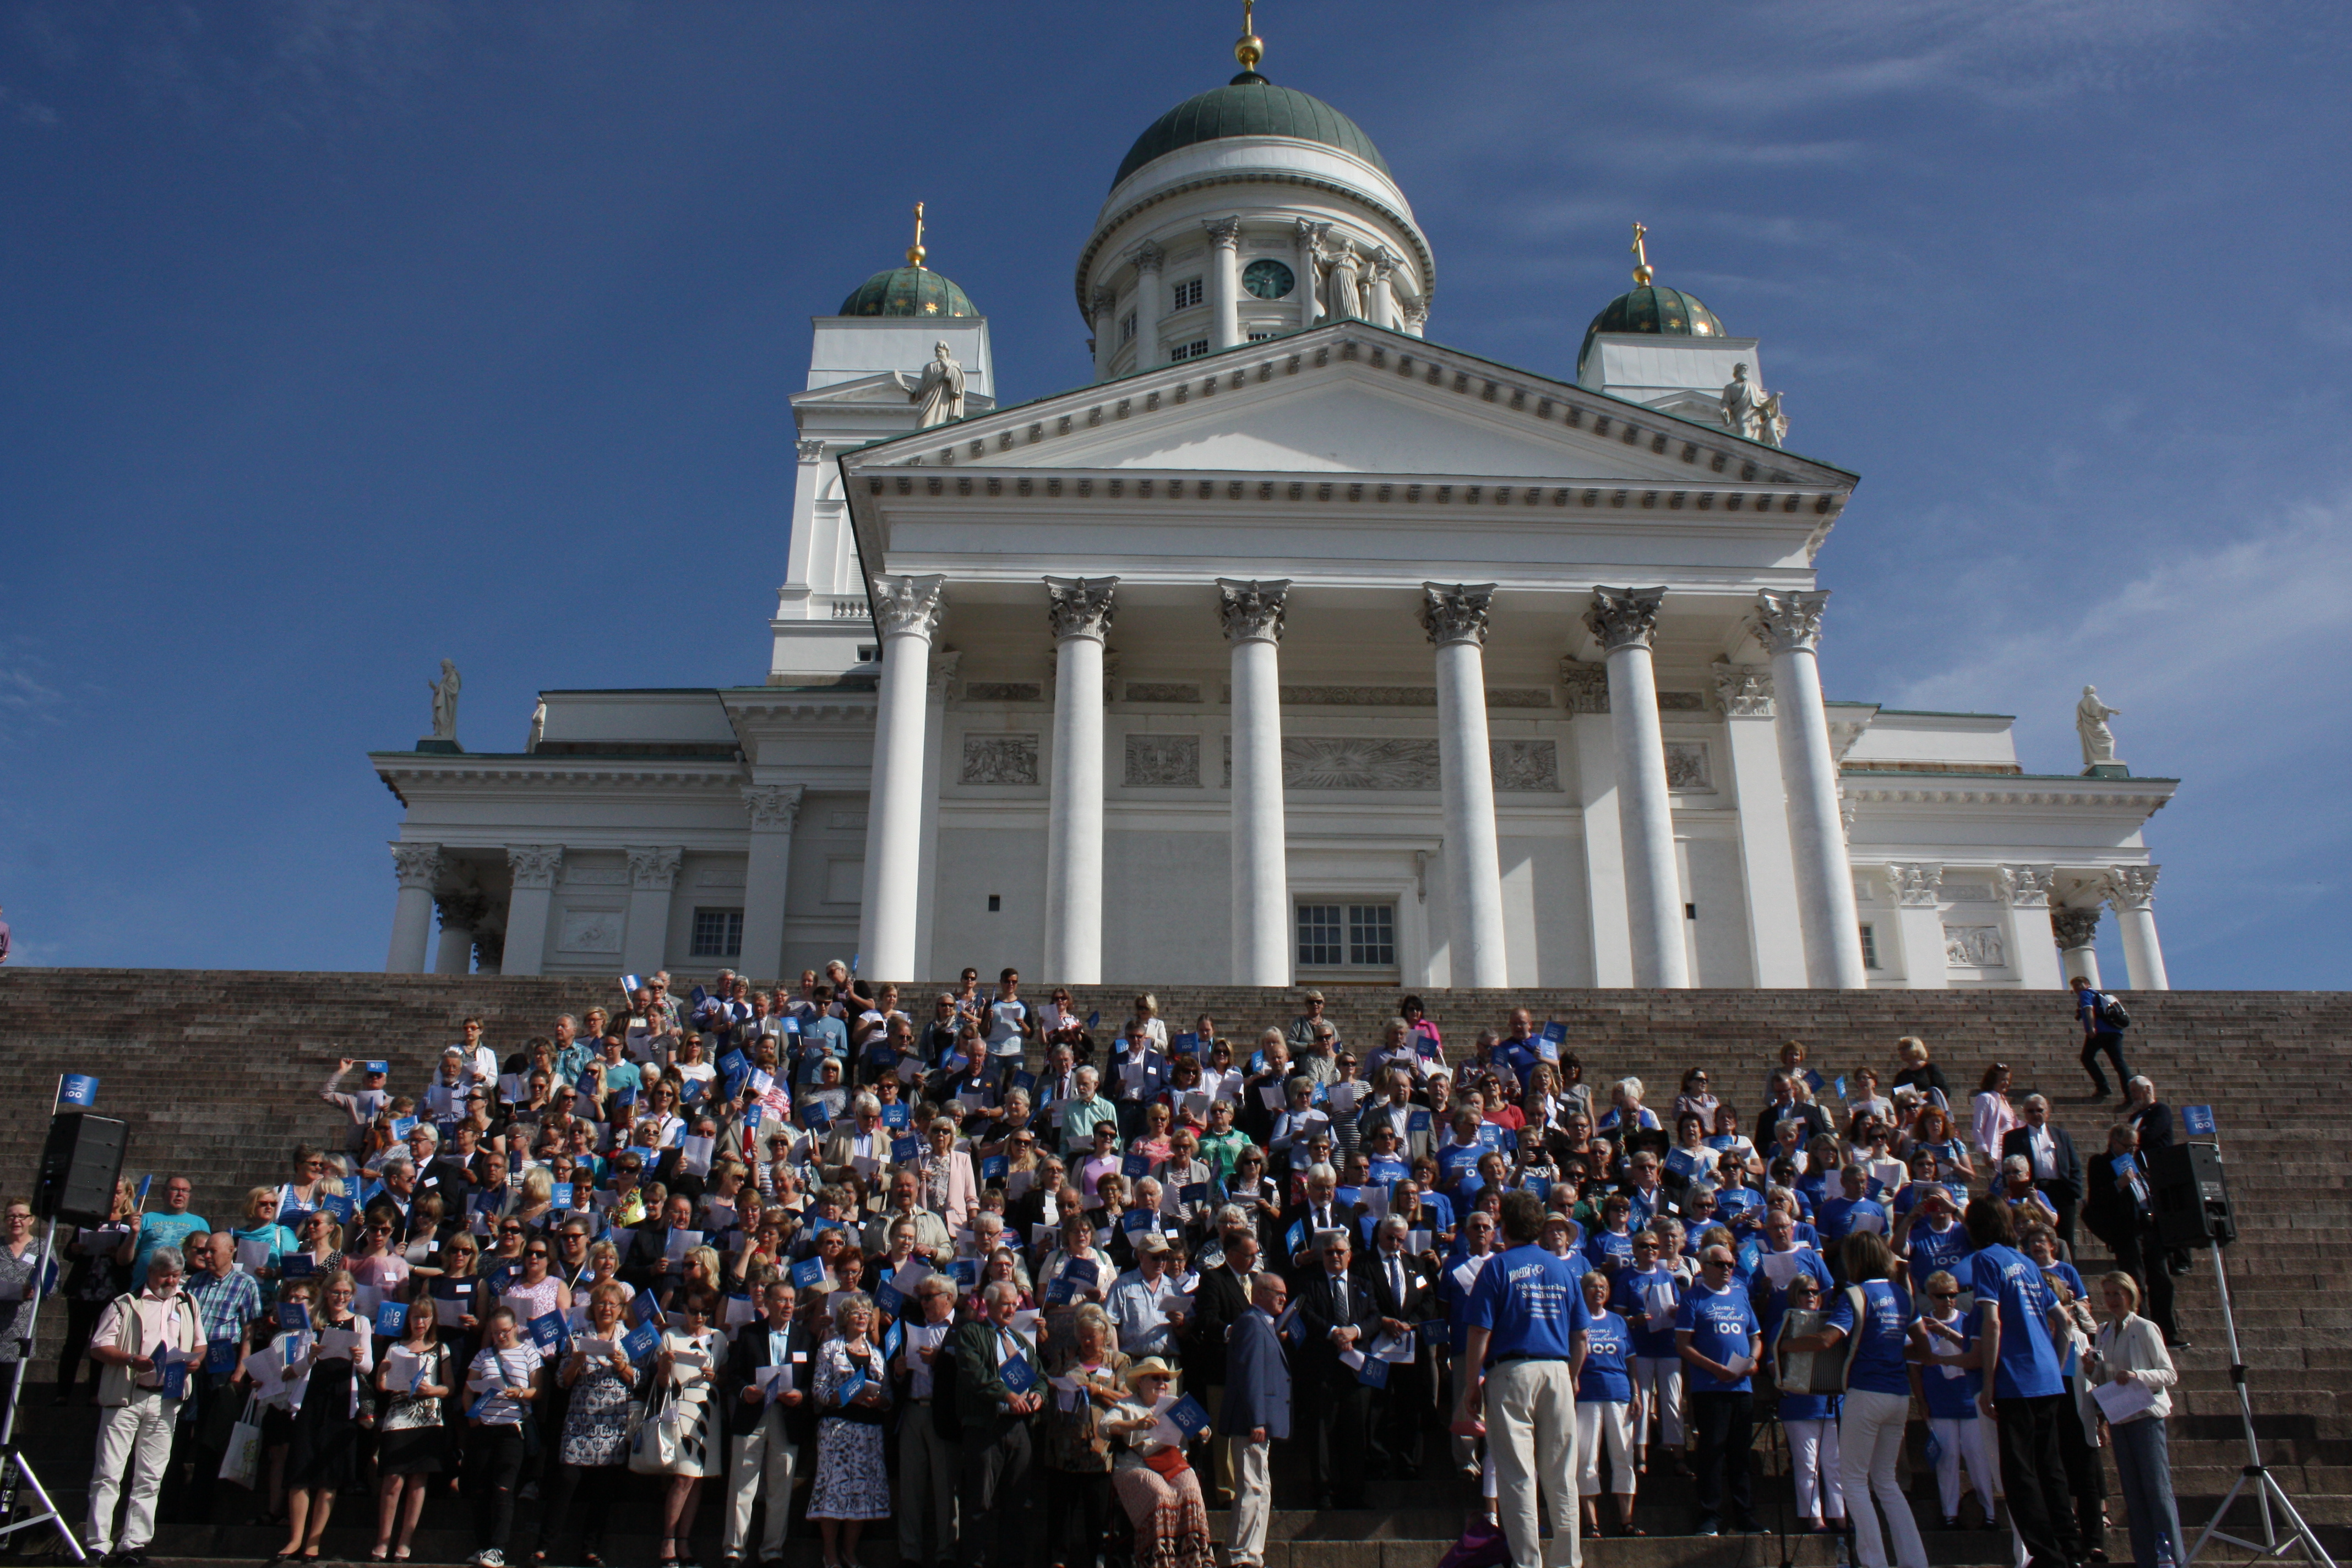 Ulkosuomalaiset eri puolilta maailmaa kokoontuivat Helsinkiin juhlistamaan Ulkosuomalaisparlamentin 20-vuotisistuntoa.